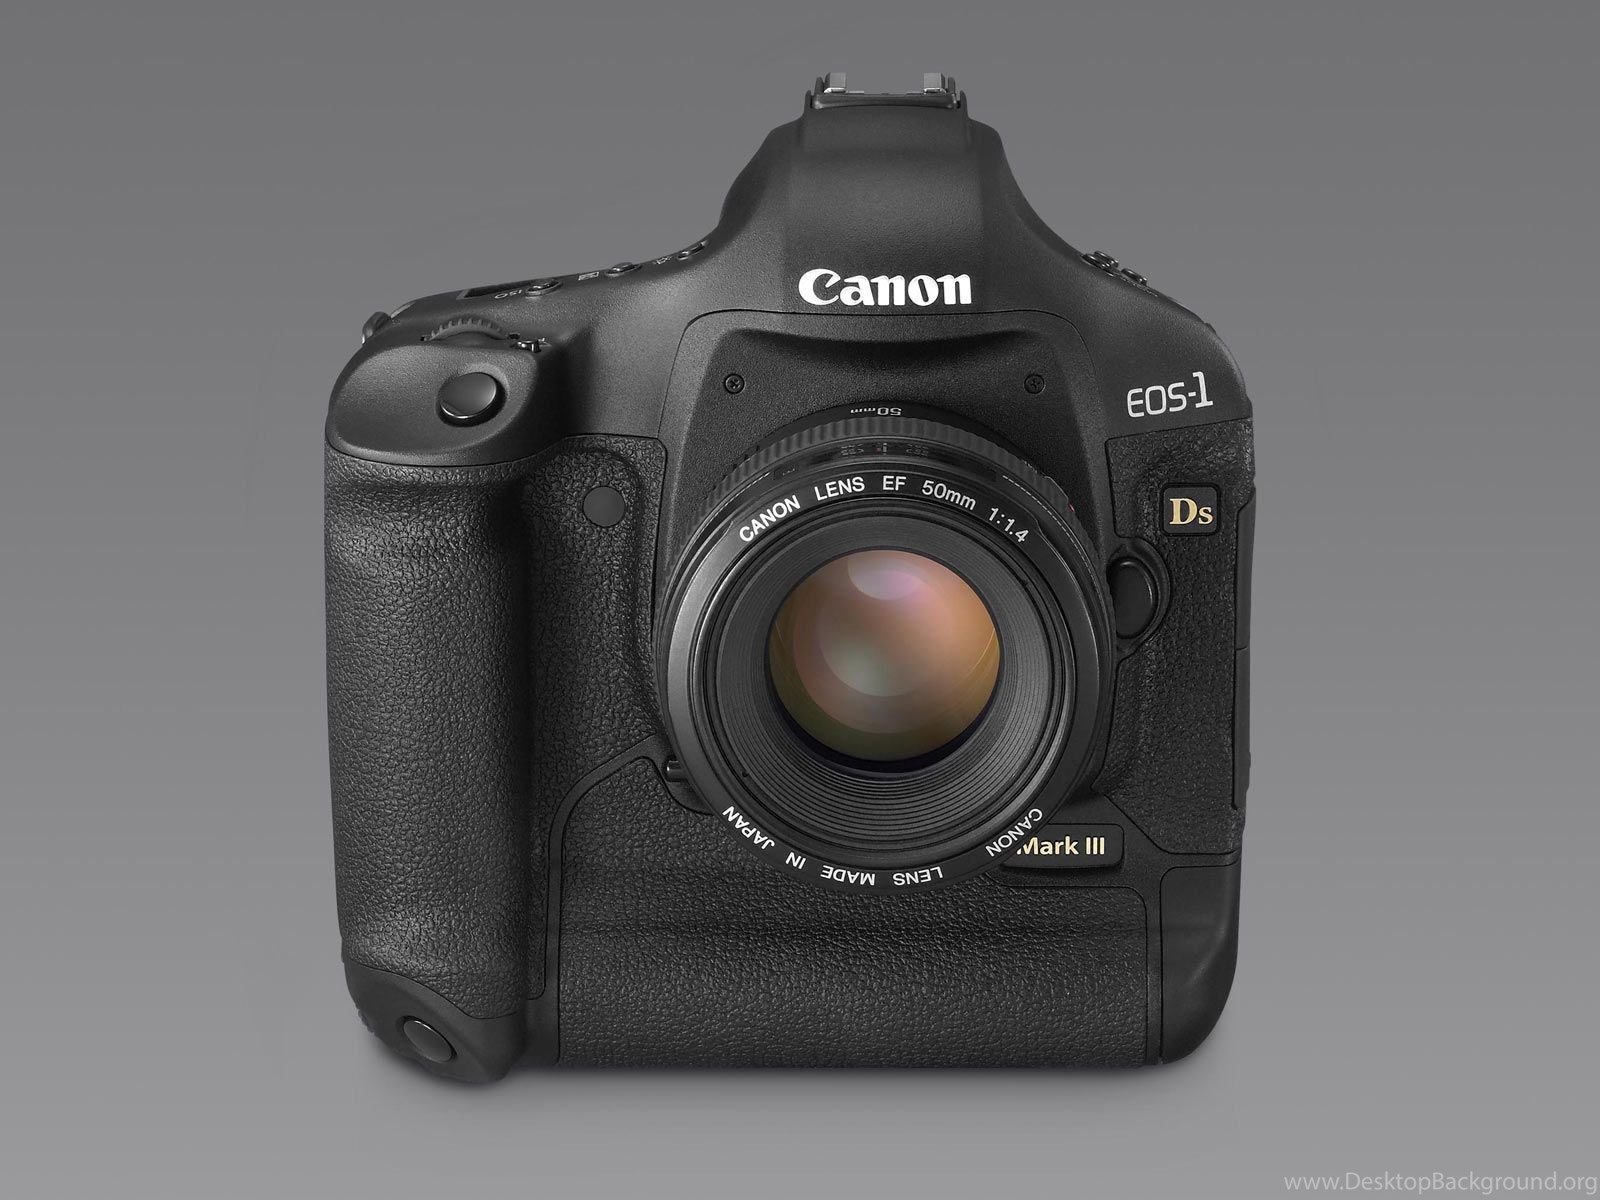 Canon eos 1d mark. Canon EOS-1ds Mark III. Canon 1ds Mark 3. Canon EOS 1ds Mark lll. Canon EOS 1ds 2002.